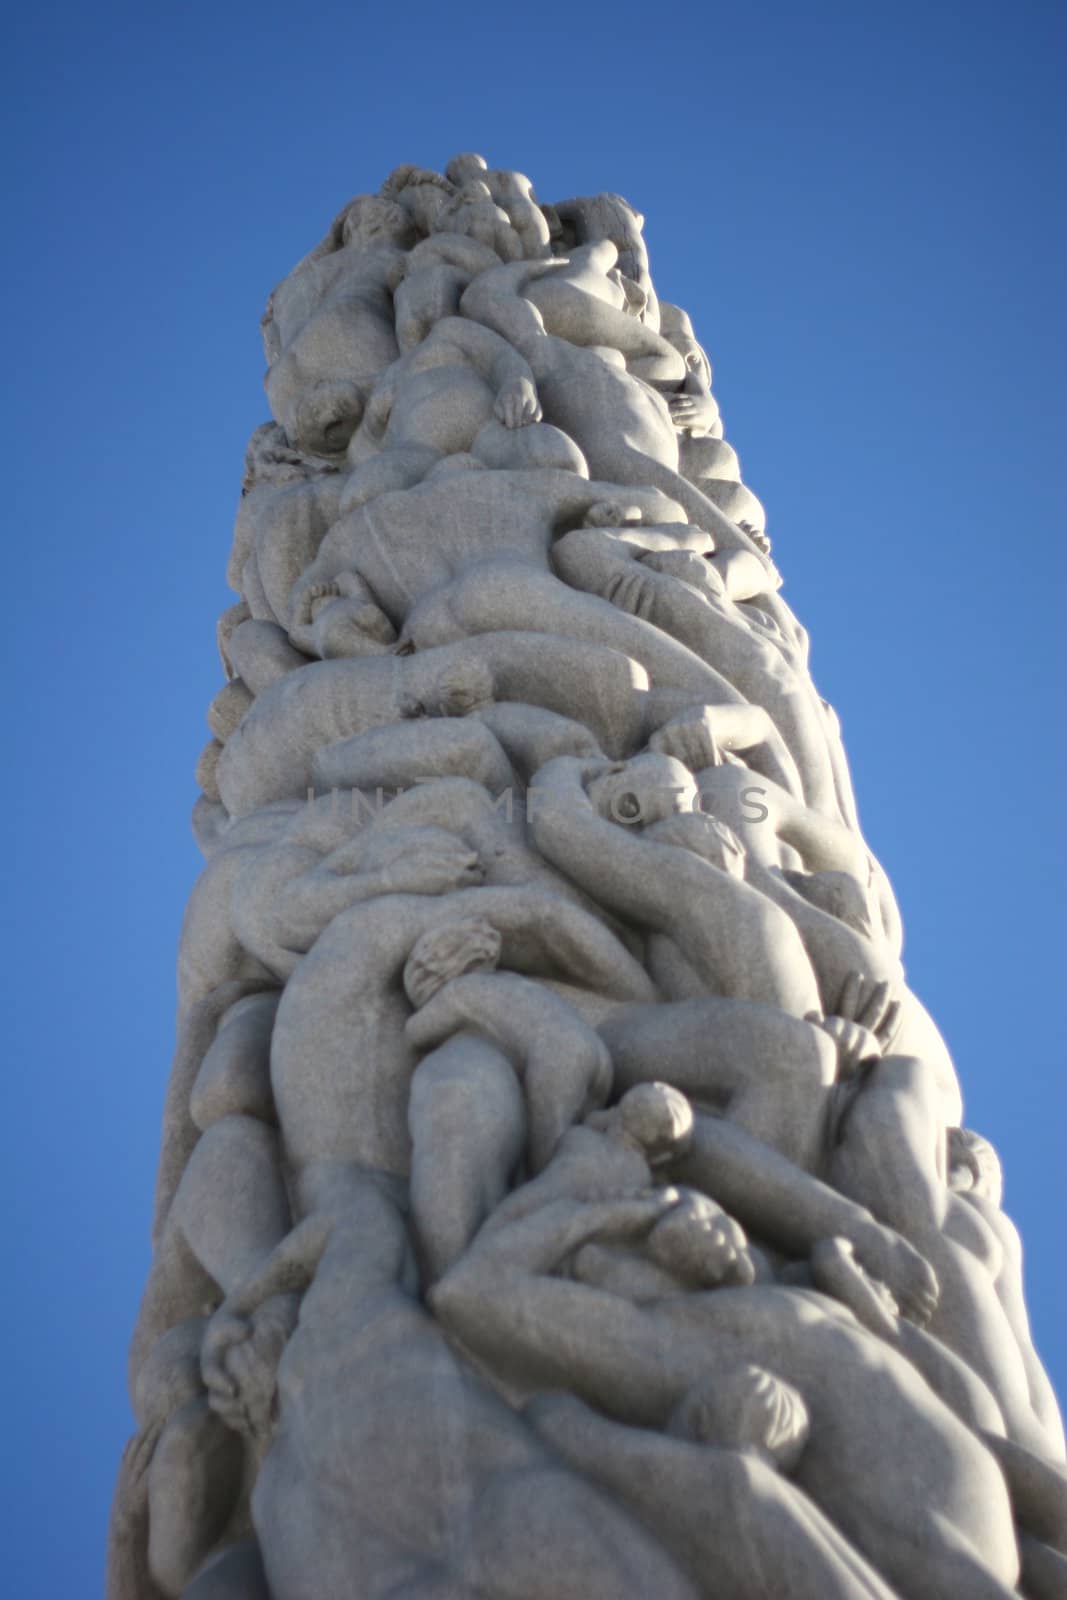 Monolitten in the Vigleands sculpture park